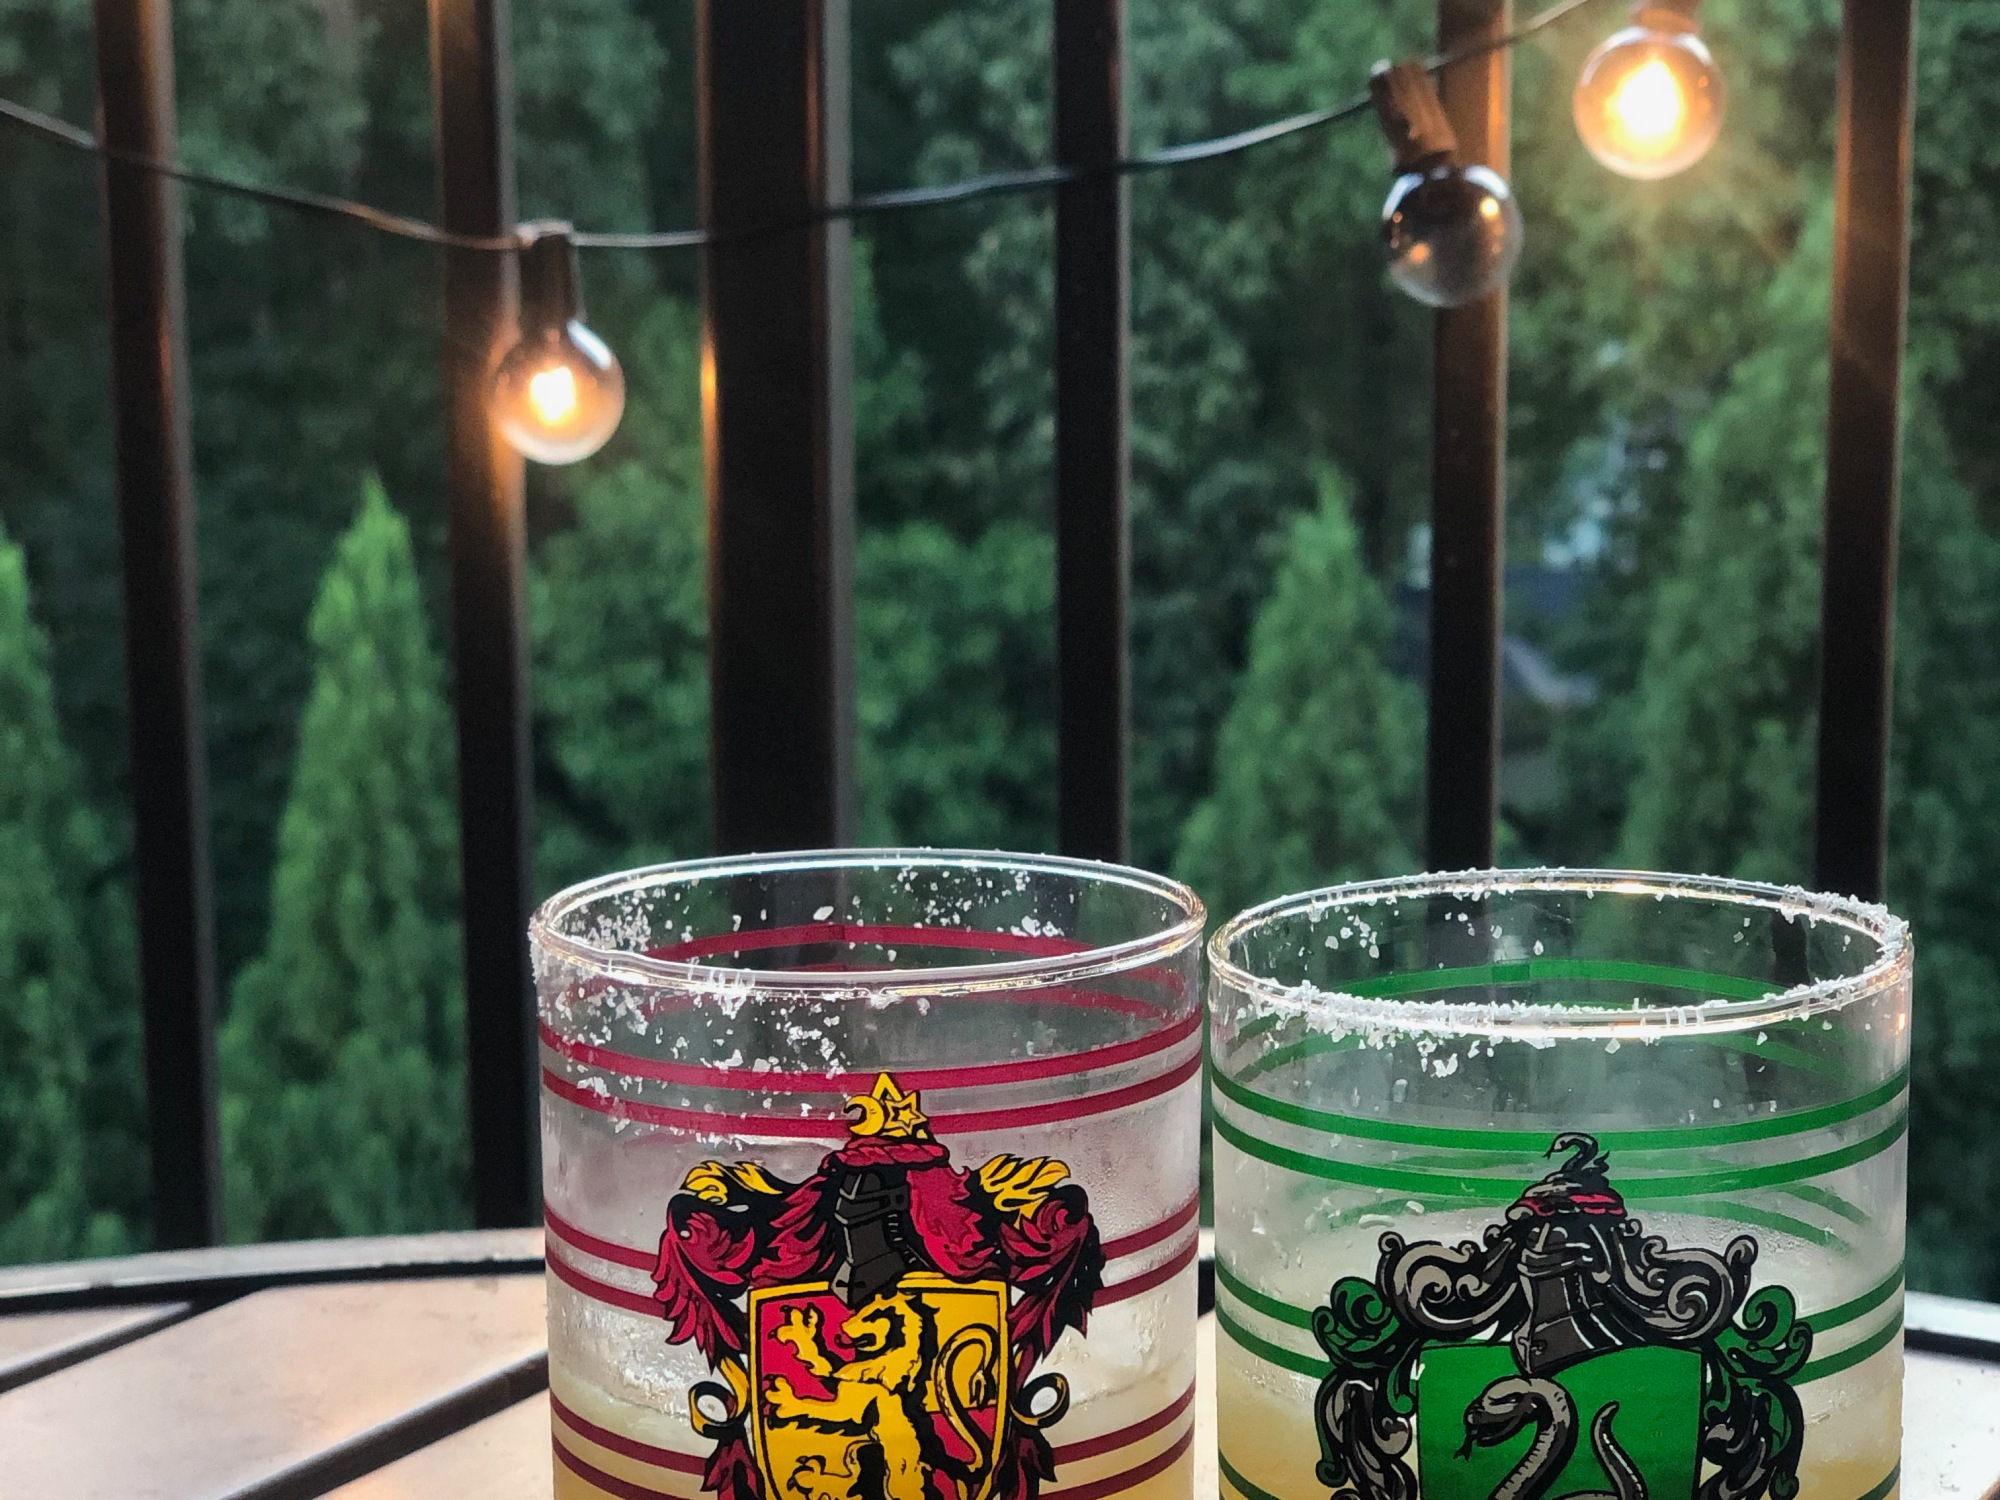 Slytherin and Gryffindor cocktails